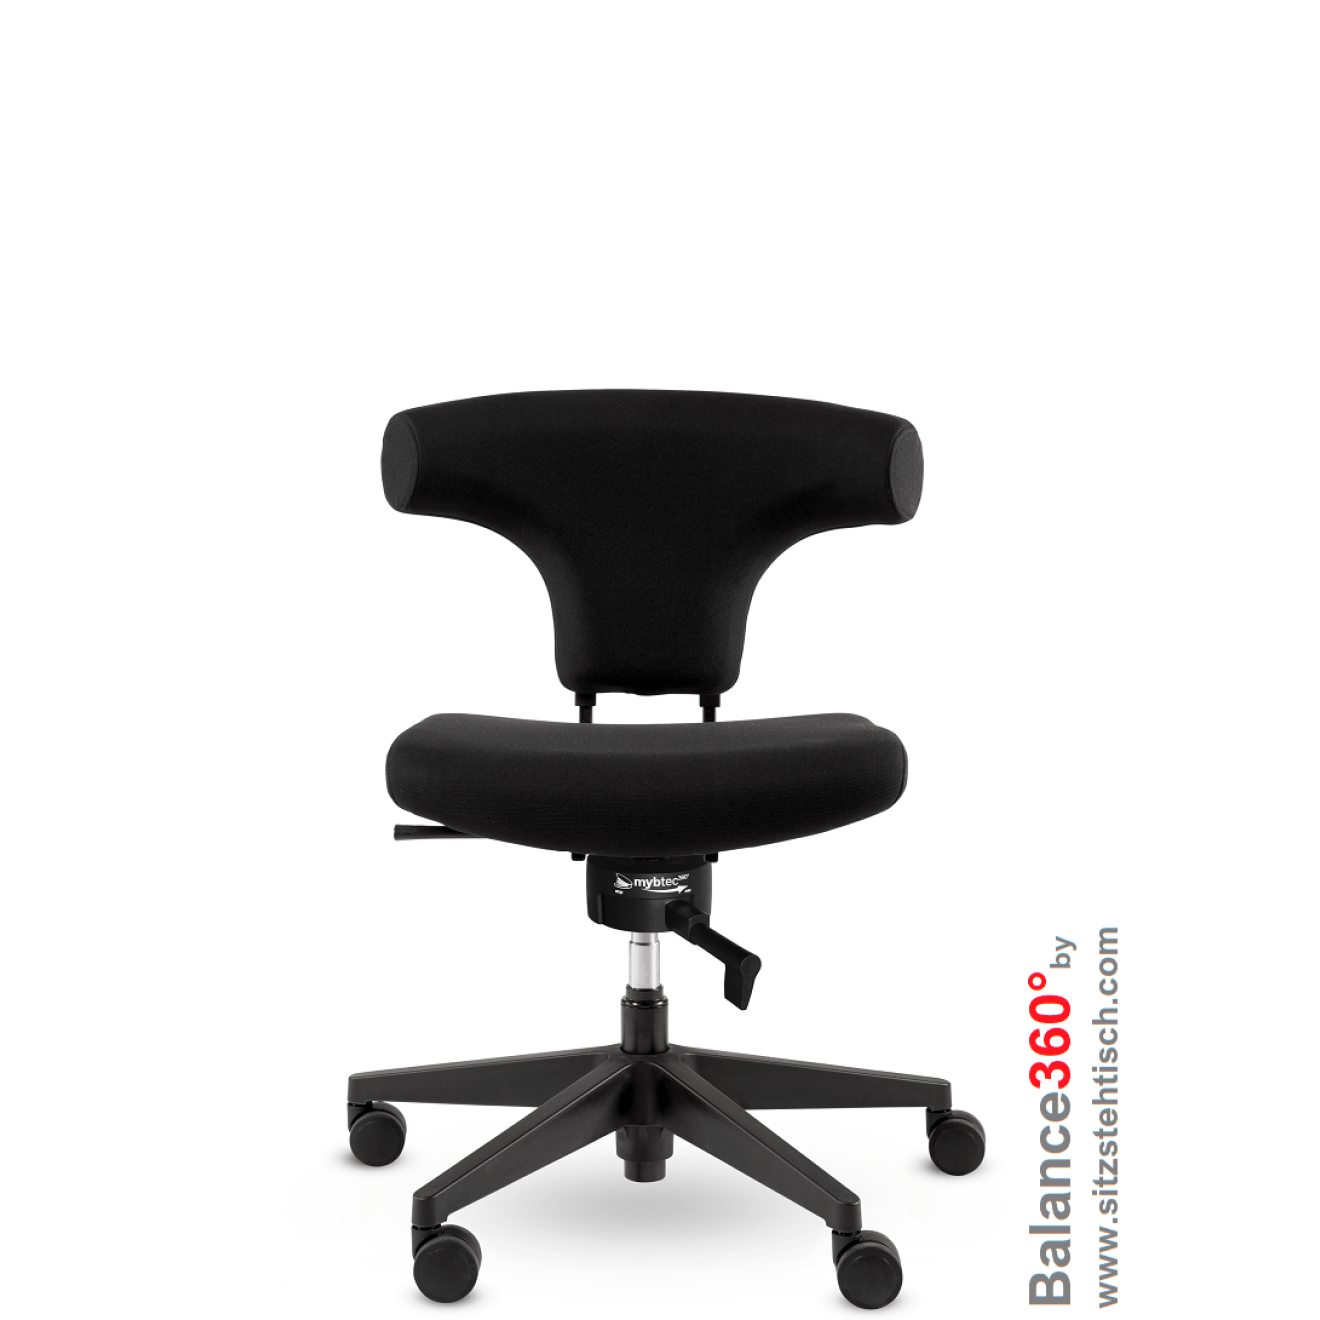 Bürostuhl mit 360° Grad beweglicher Sitzfläche - Spindl Bull - Sitztiefenverstellung - Bezug Schwarz - Belastbarkeit bis 125 kg - 5 Jahre Garantie - 50096